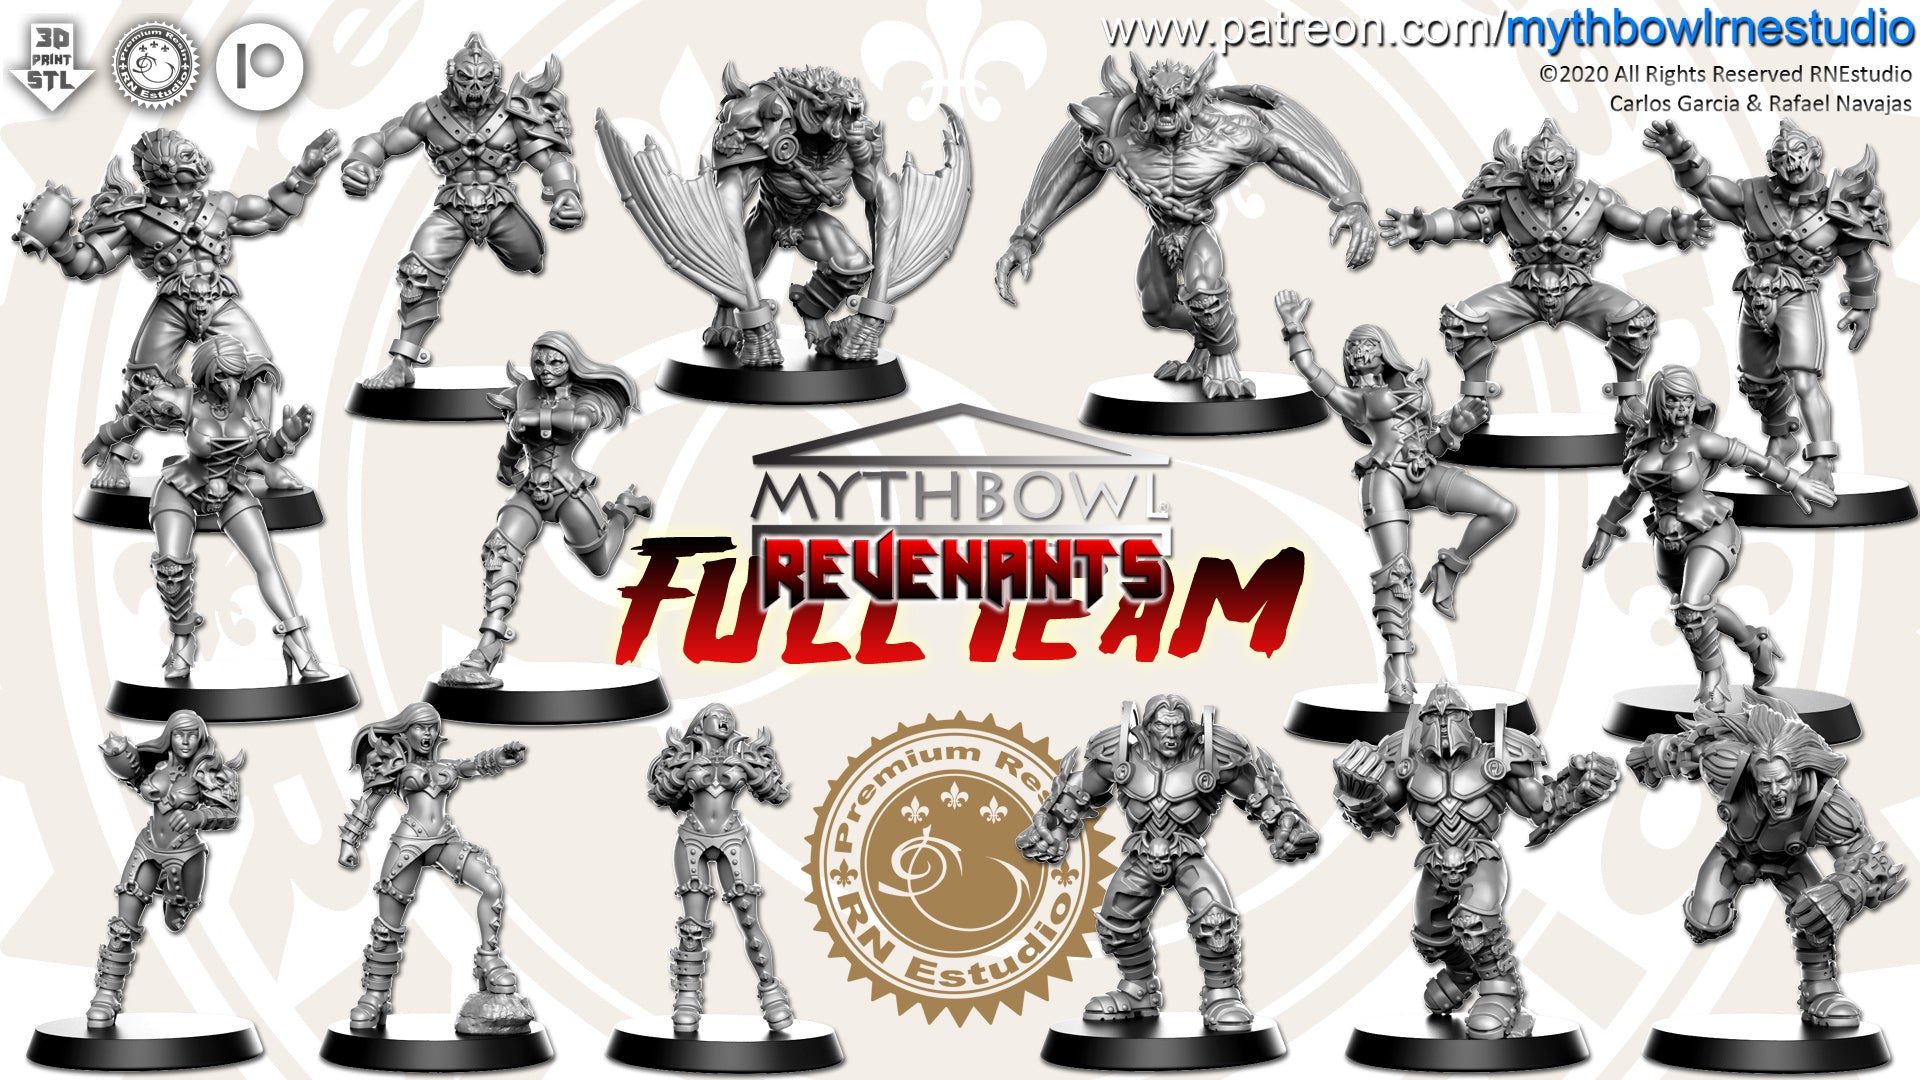 Revenants Team